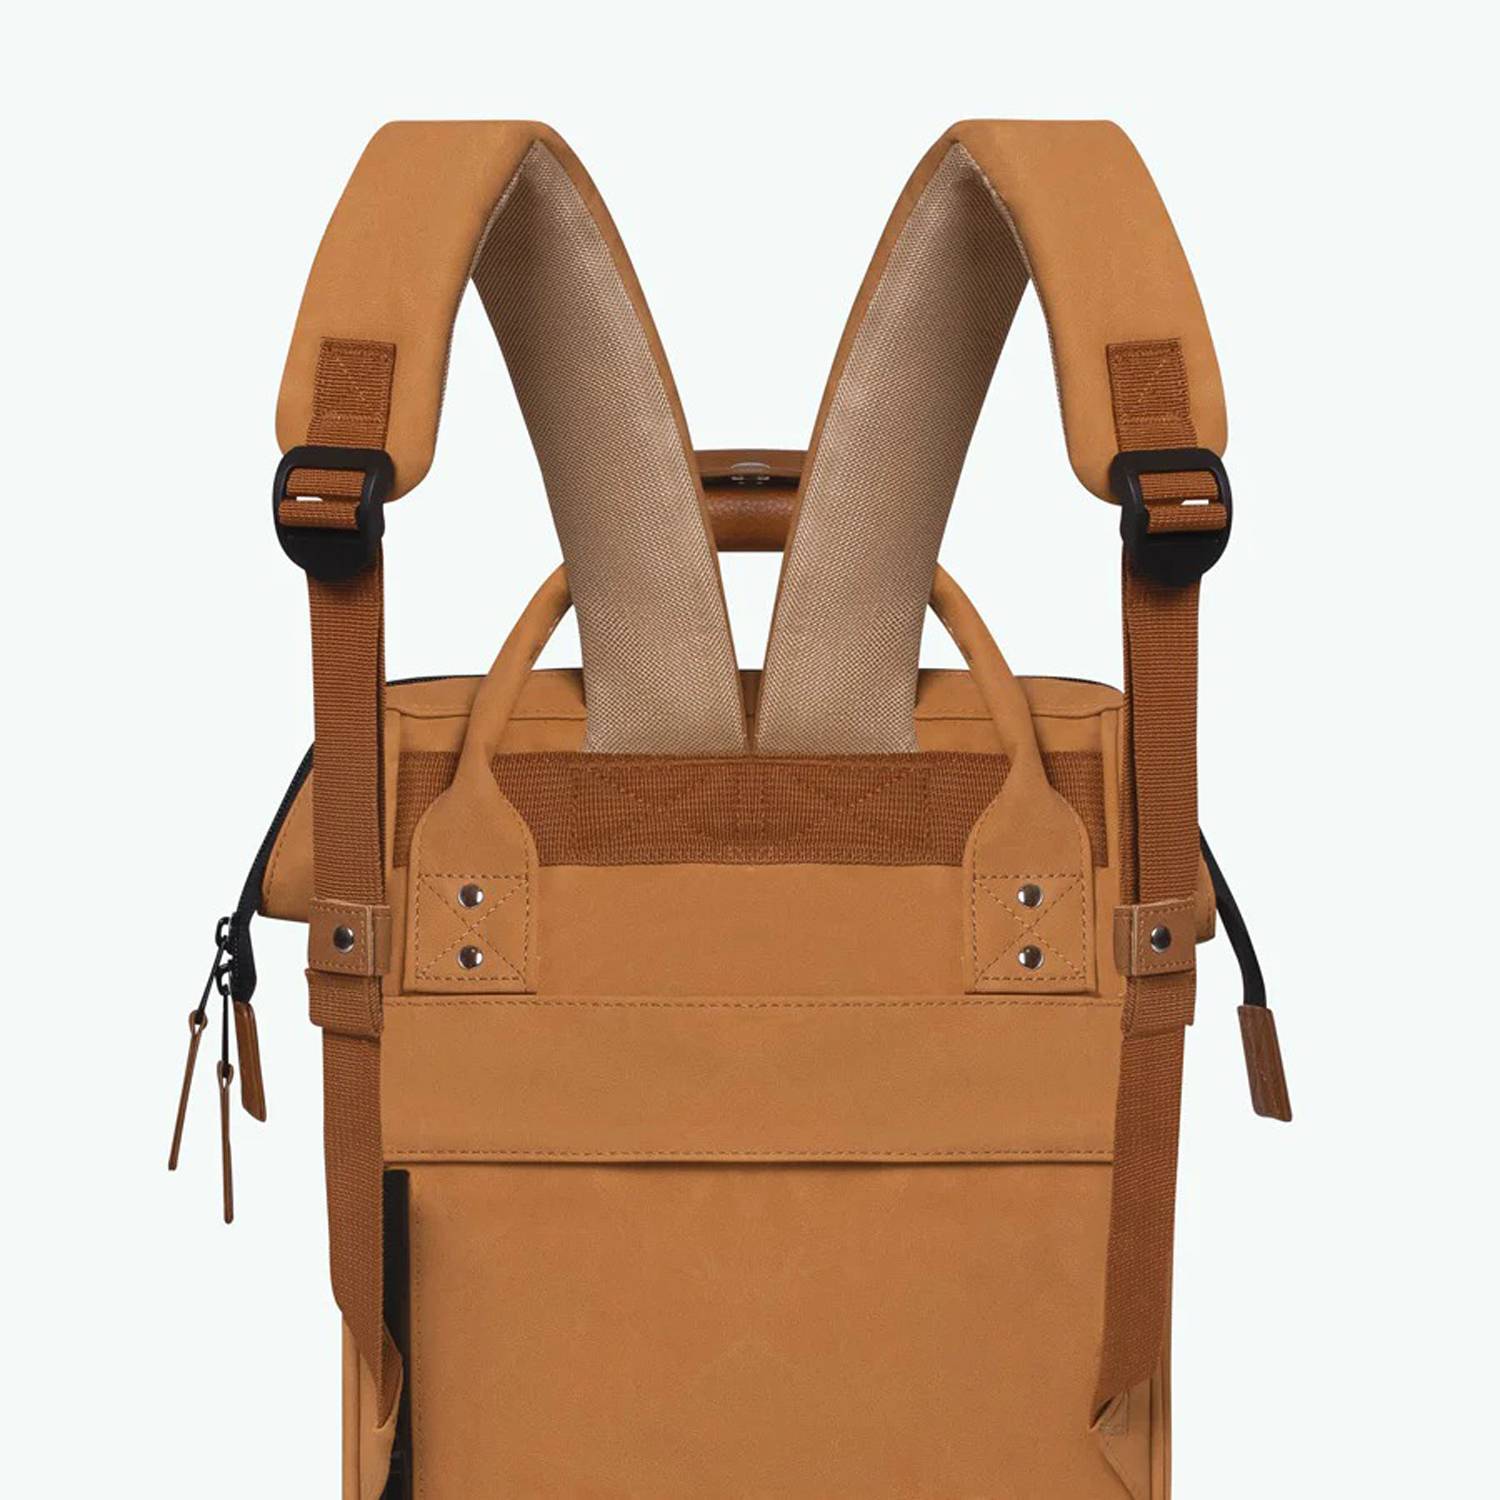 Petit sac à dos Cabaïa Adventurer Mini ADV S MOSCOU couleur marron vue de dos avec bretelles